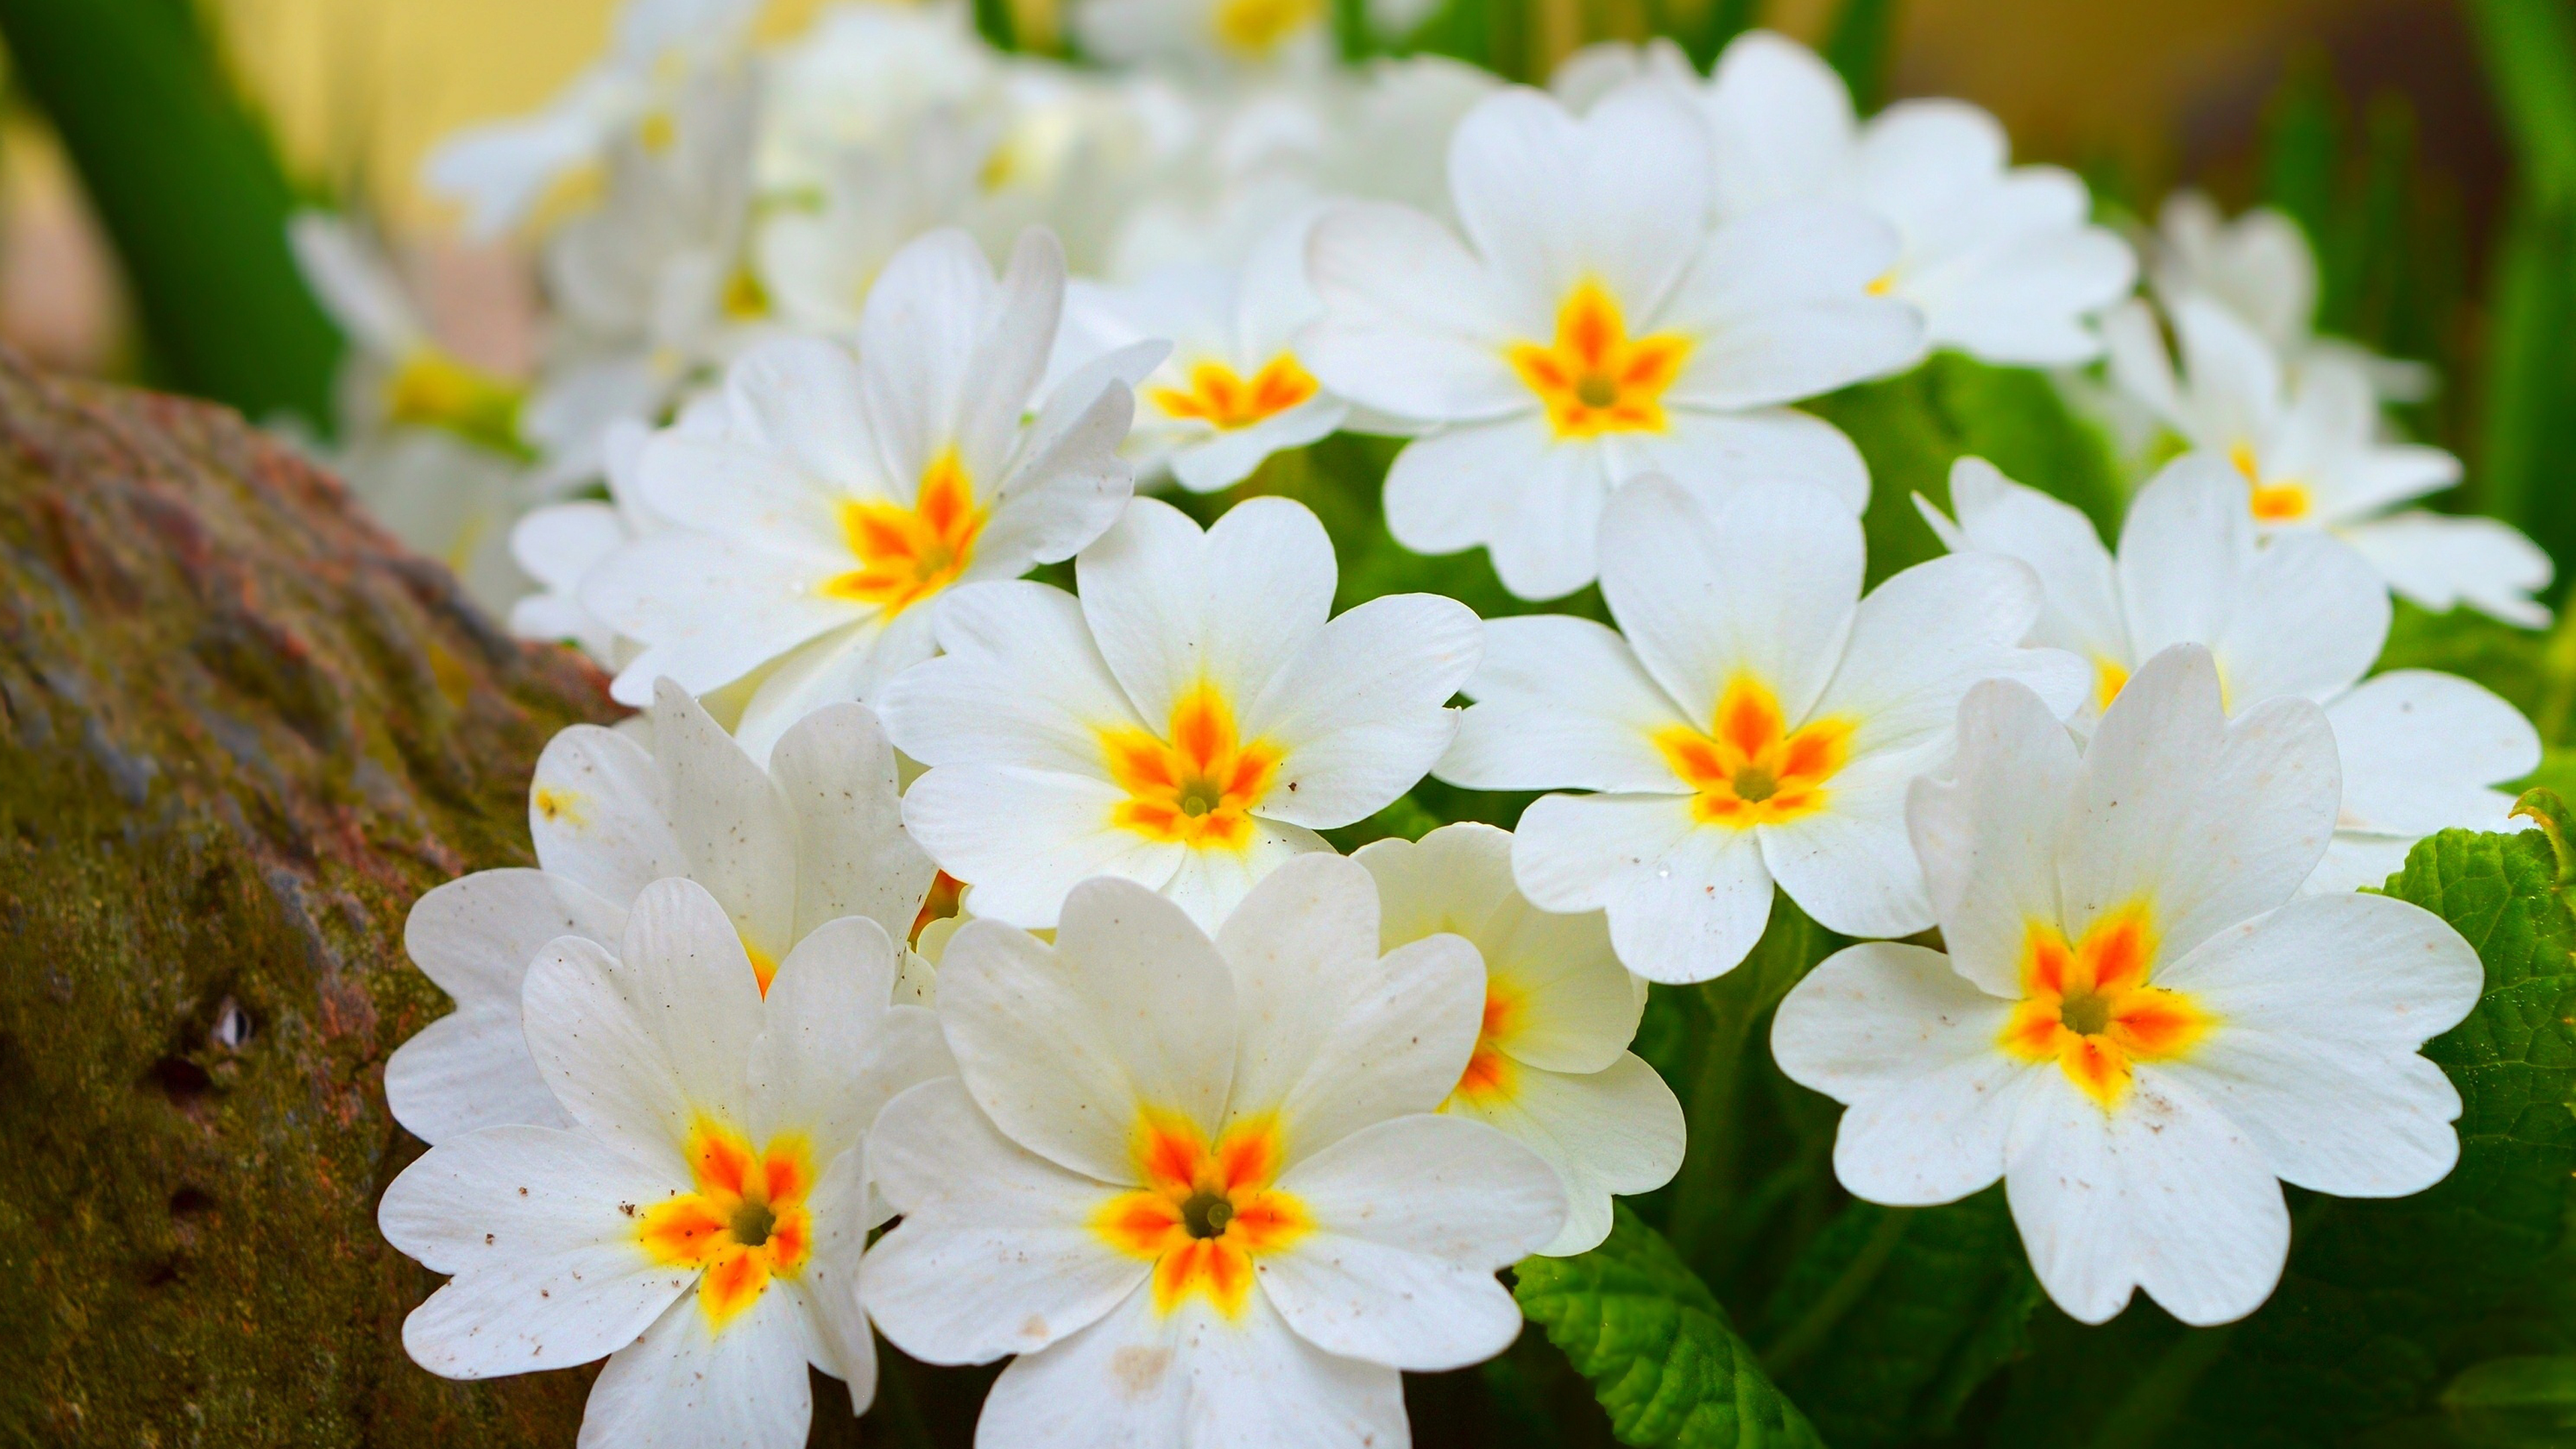 Картинки на заставку весенние цветы. Примула первоцвет весенний. Примула весенник. Нарцисс, ветреница, примула. Белые цветочки первоцветы.